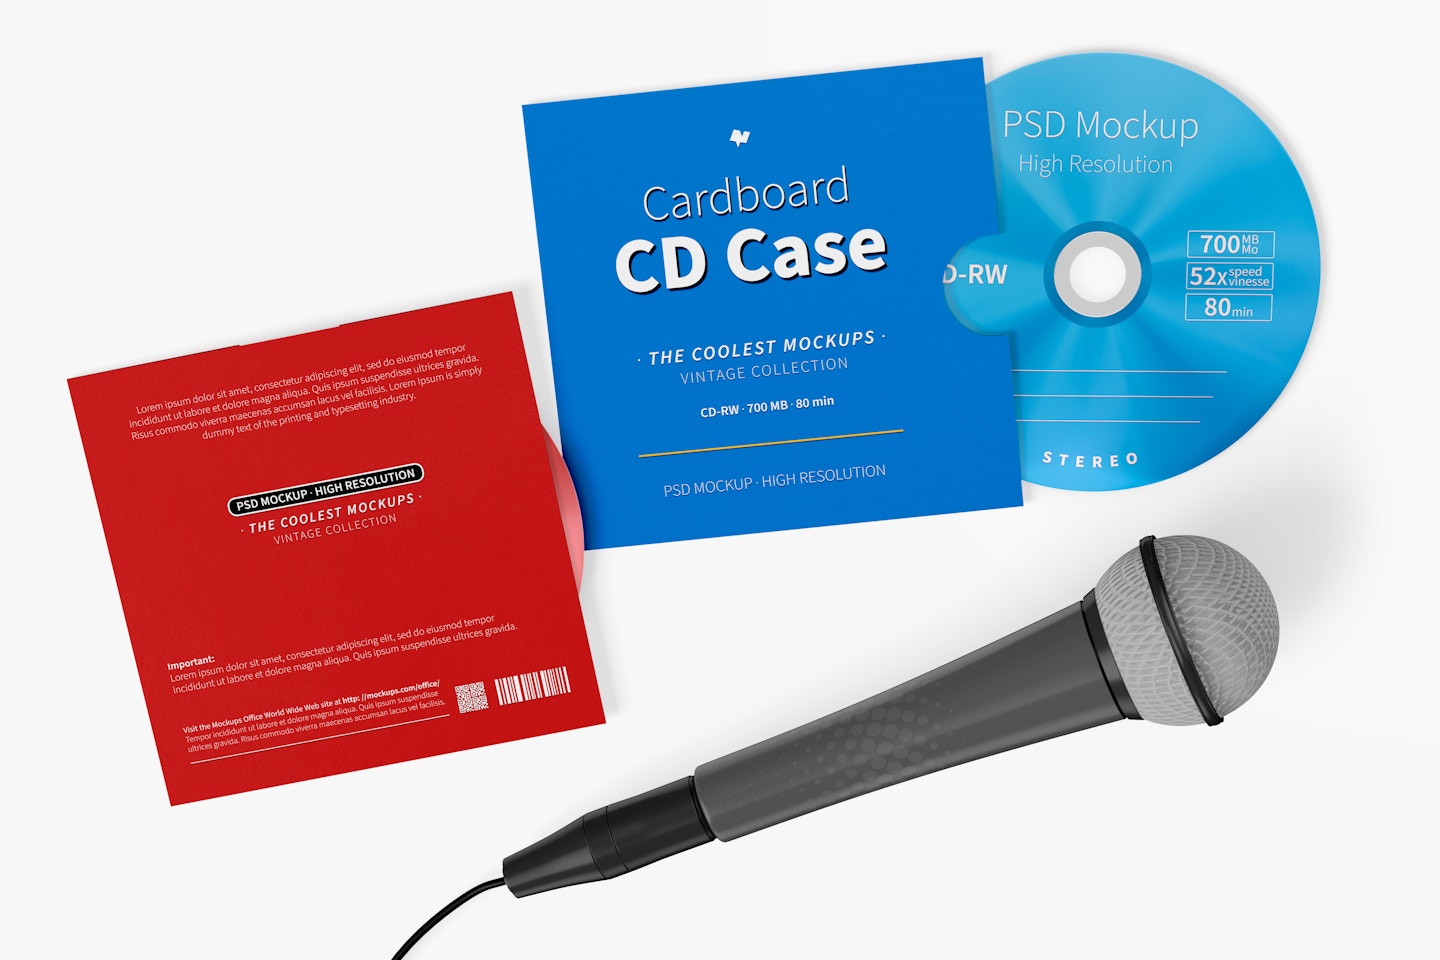 Maqueta de Estuche de Cartón para CD con Micrófono